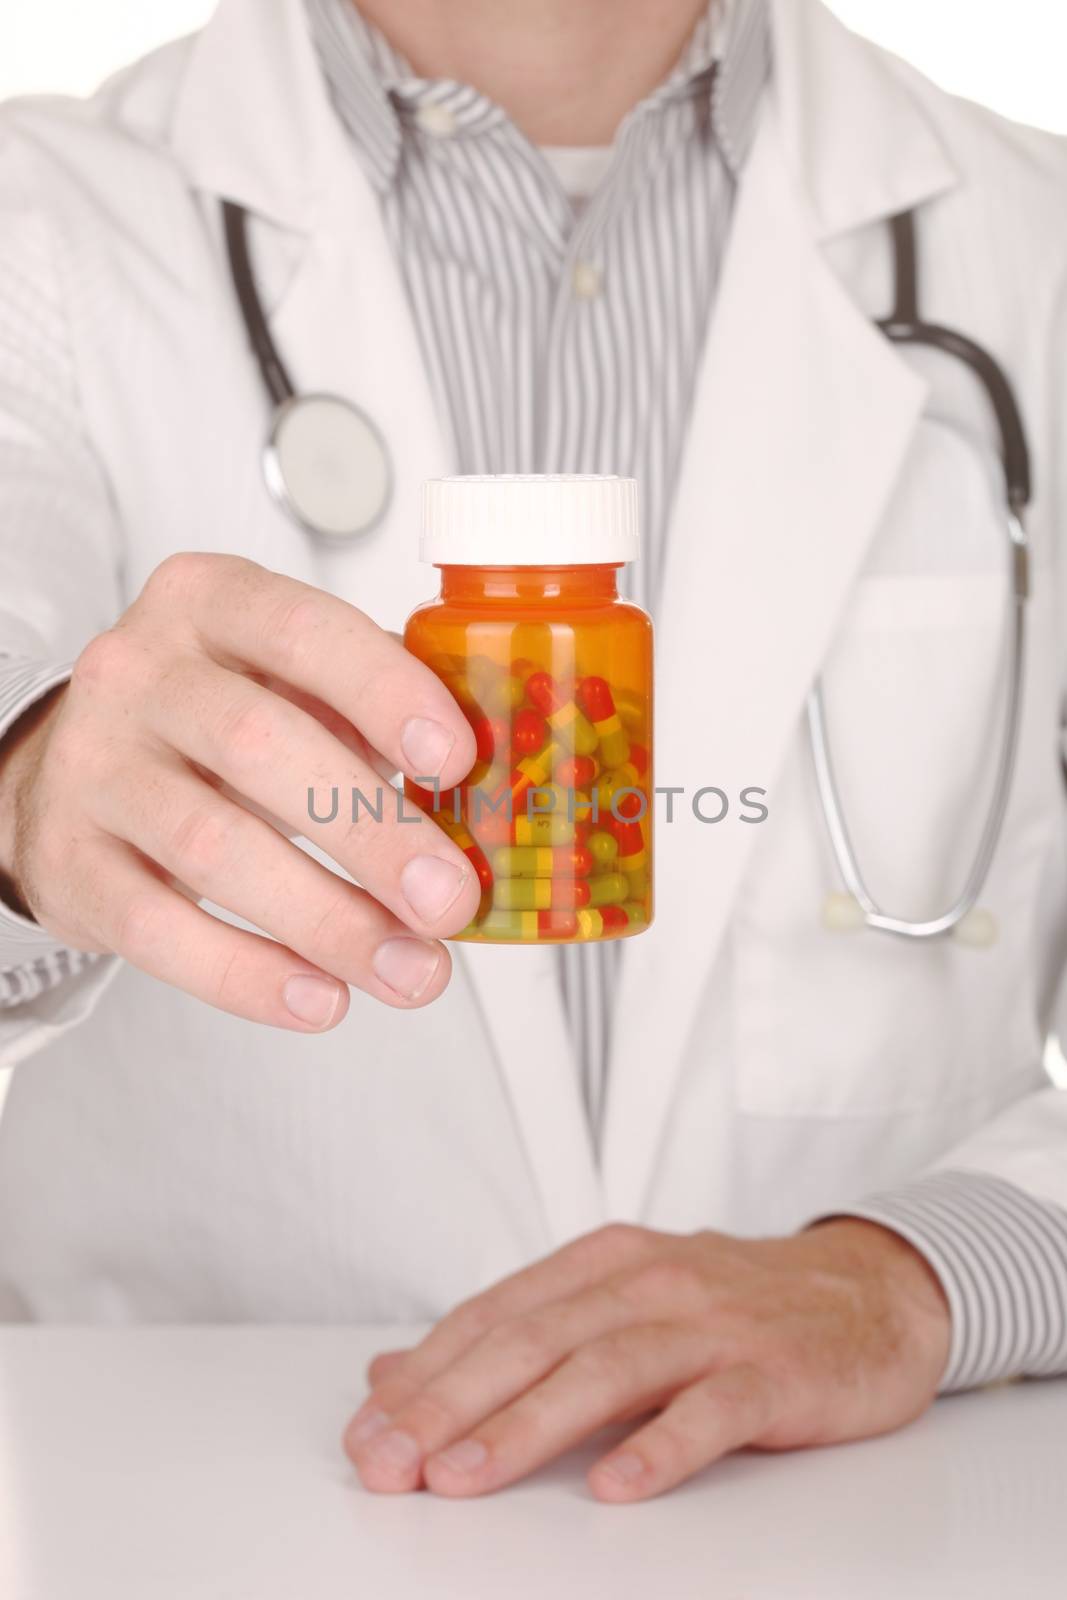 Handsome Doctor With Medication in Prescription Bottles